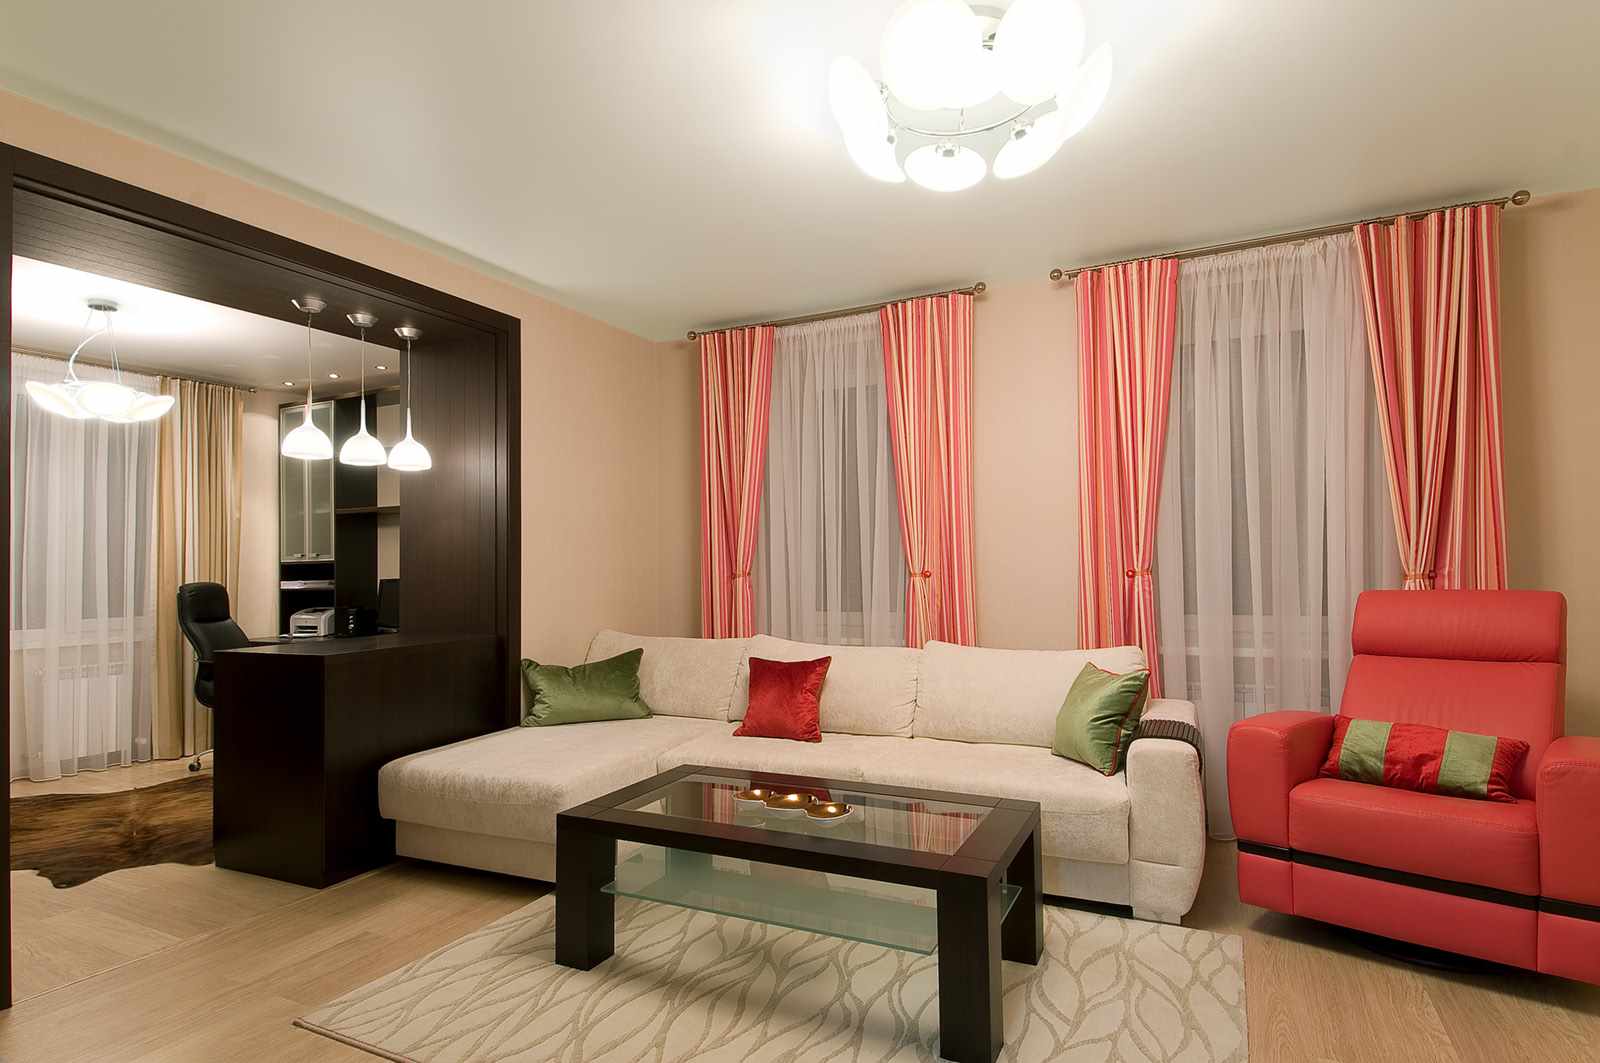 مثال على الداخلية الجميلة لغرفة المعيشة 19-20 متر مربع